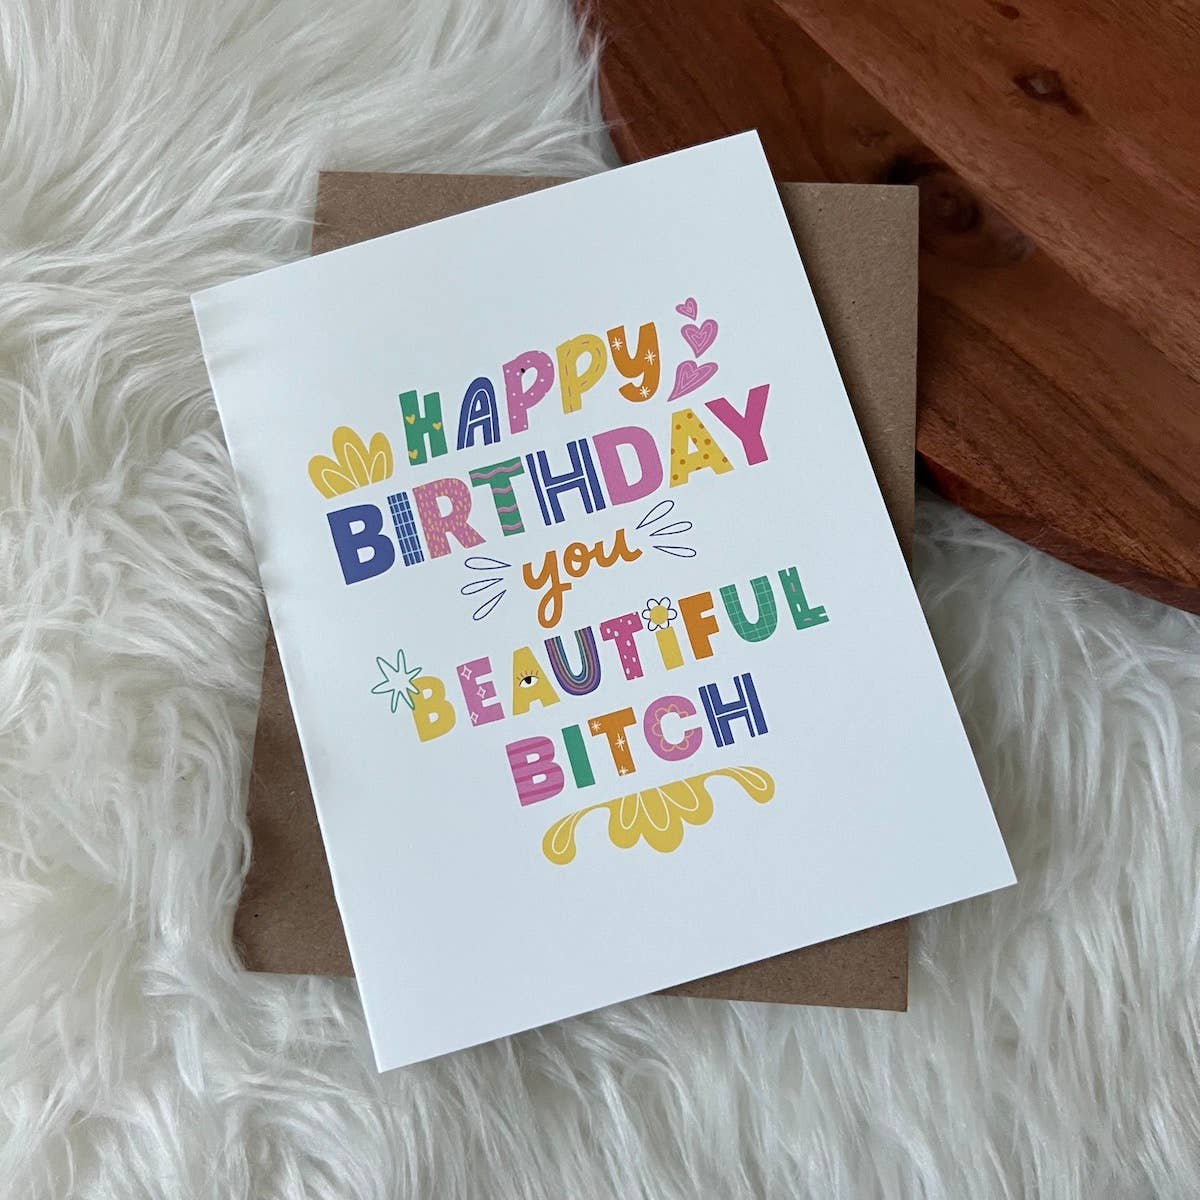 Greeting Card - Birthday: Happy Birthday You Beautiful B*tch